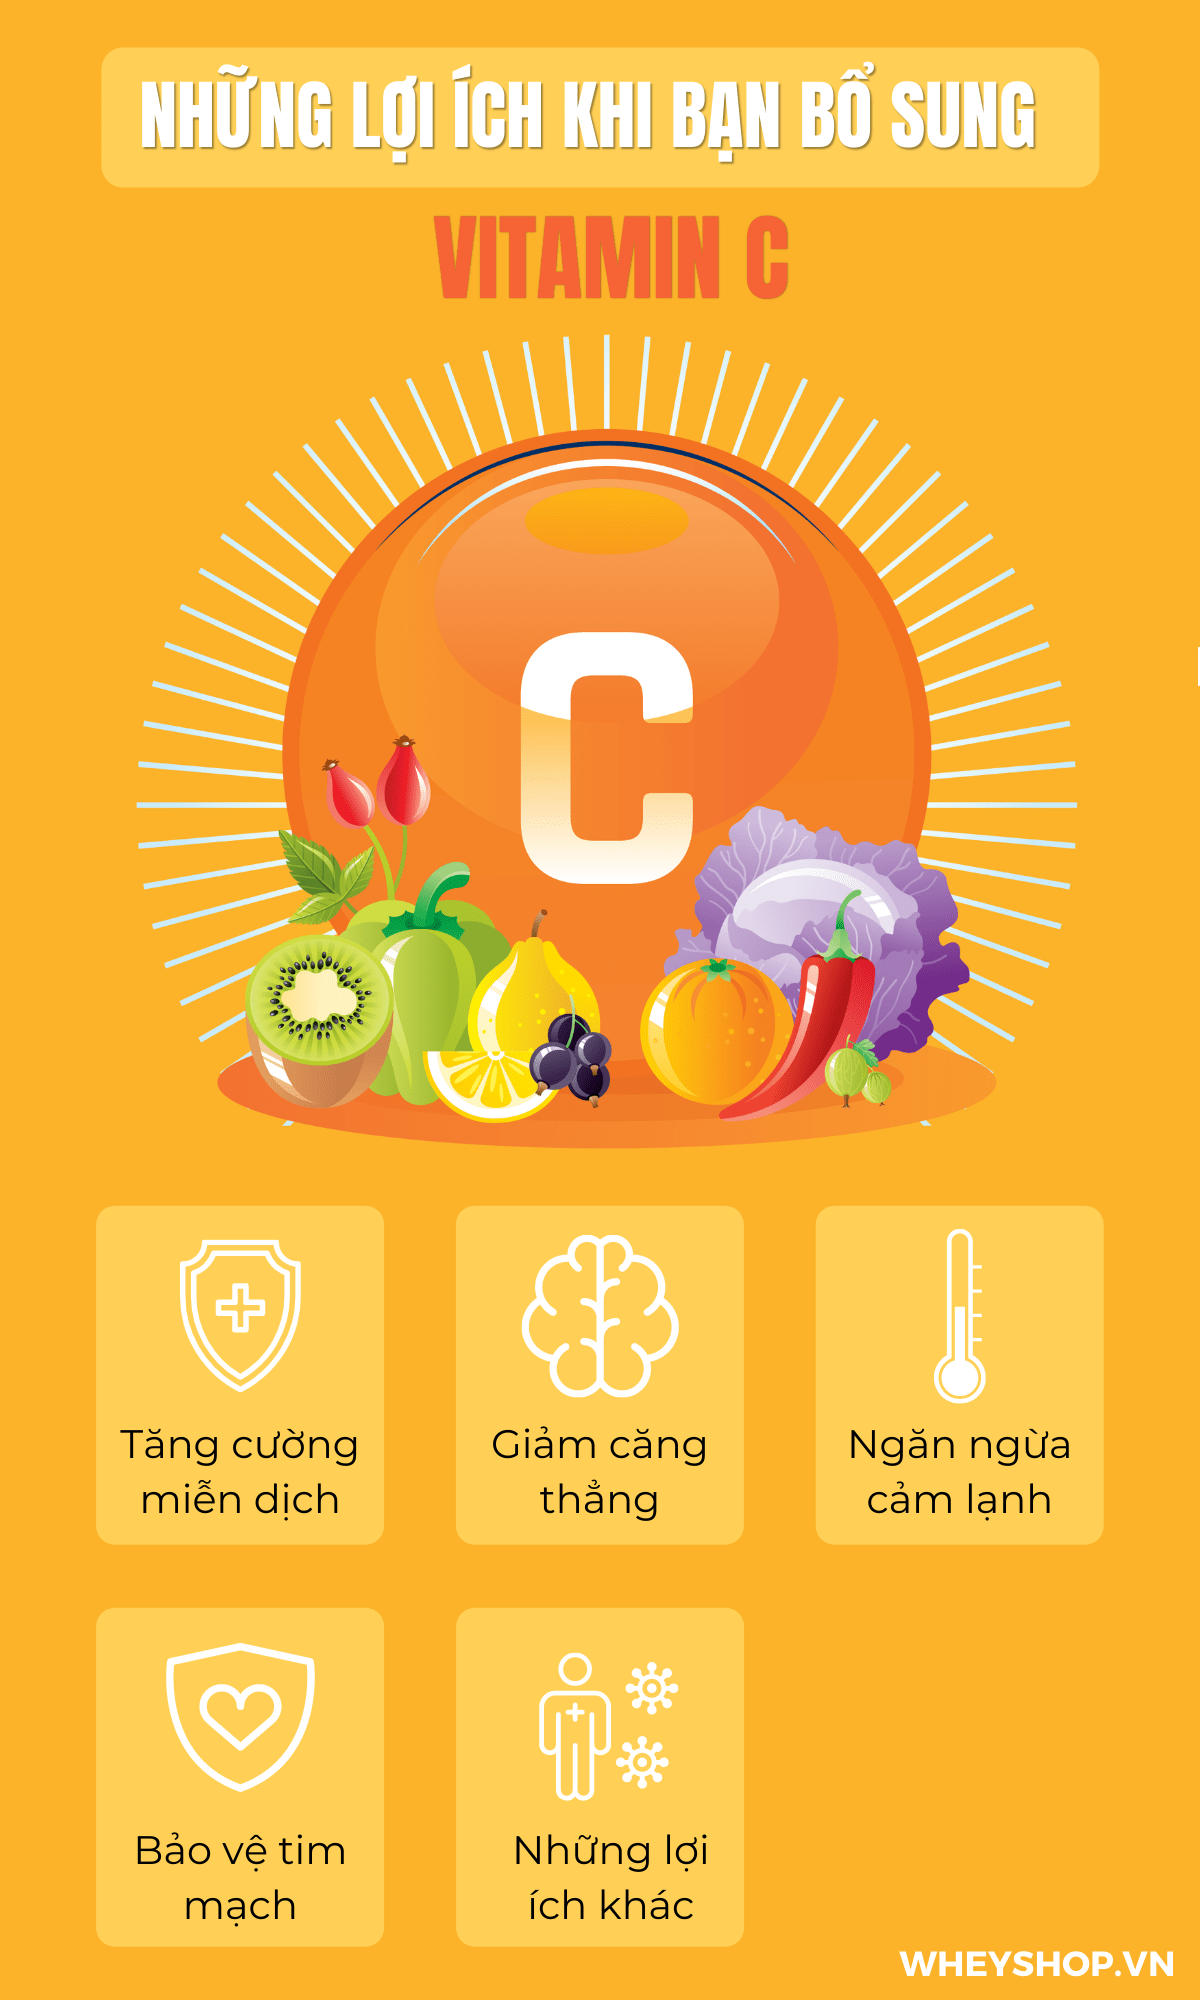 Chúng ta thường được khuyên nên bổ sung đầy đủ vitamin, đặc biệt là vào mùa hè cần phải bổ sung nhiều hơn lượng vitamin C. Vậy Vitamin C là gì?......